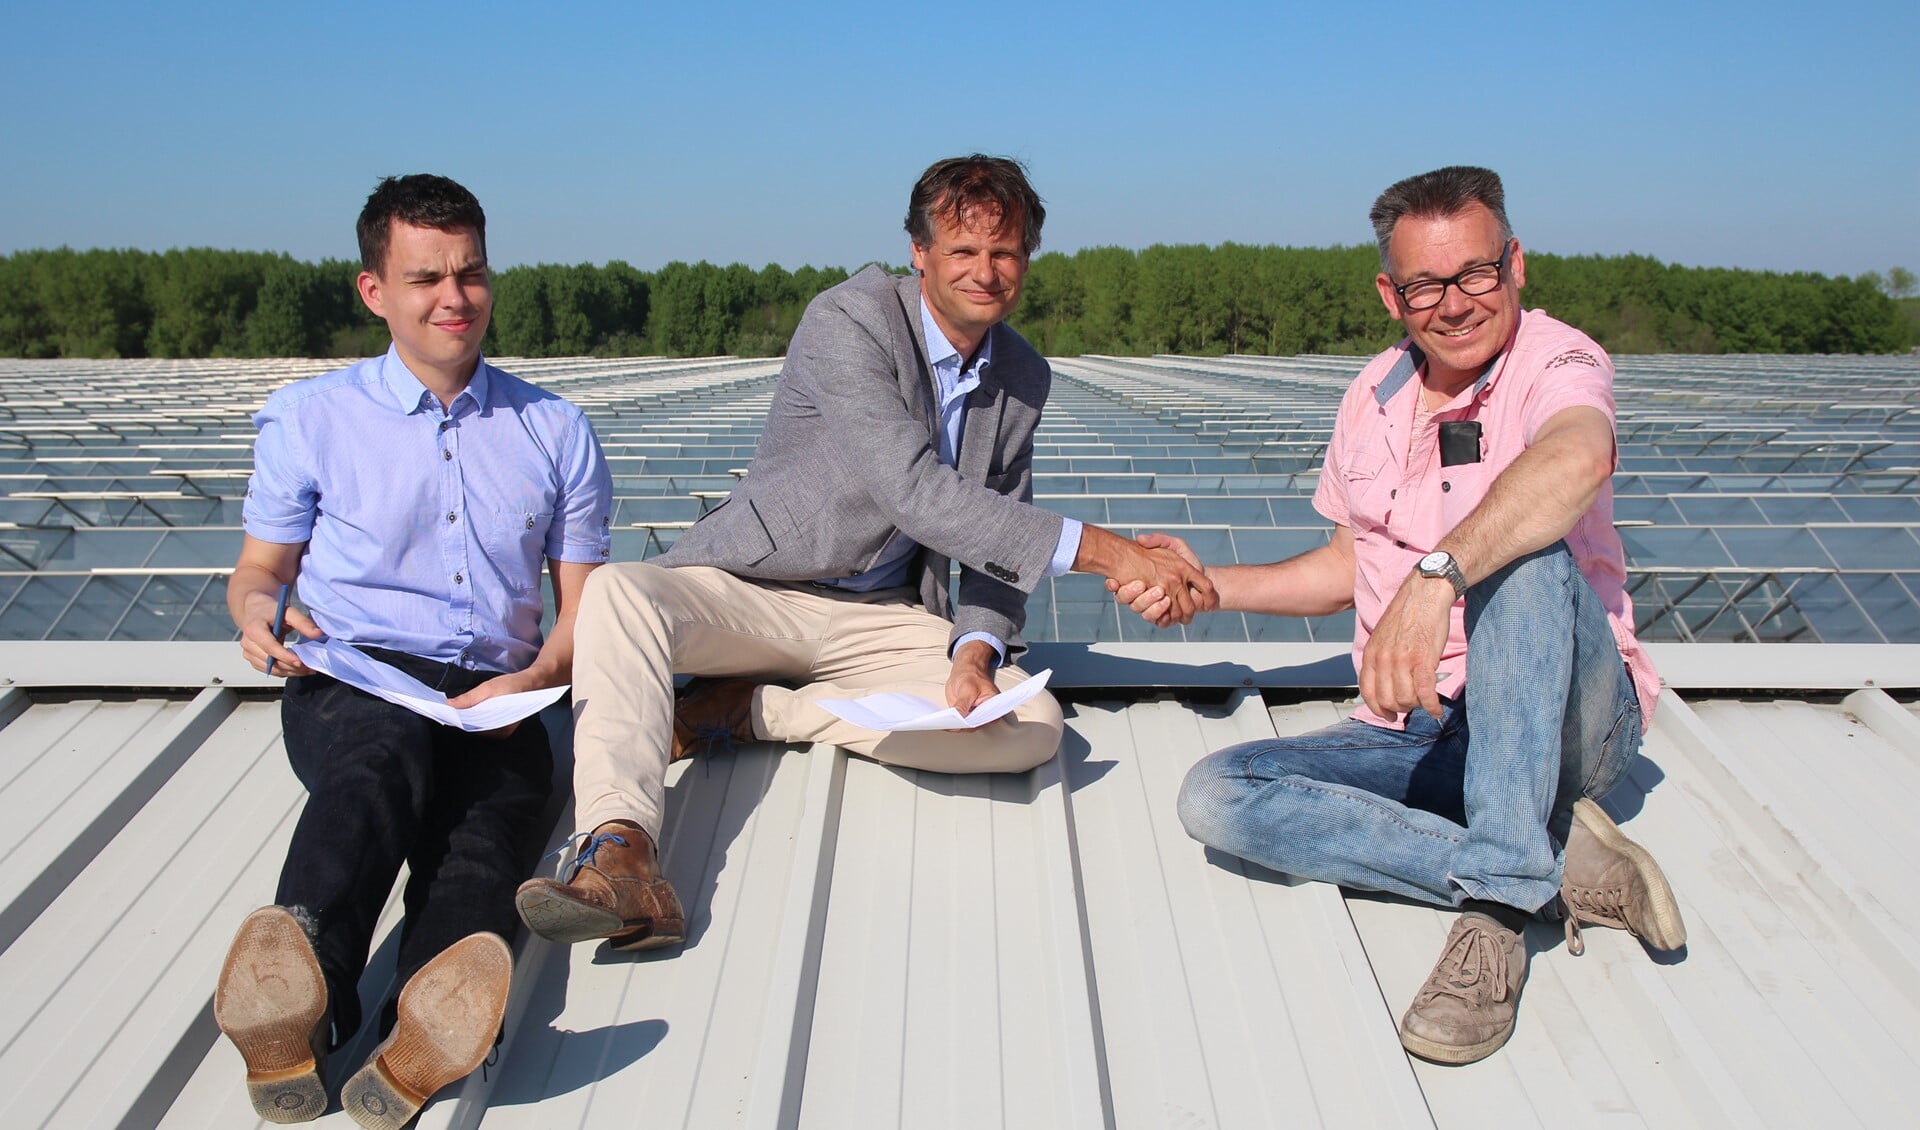 De intentie-overeenkomst van de Energiecoöperatie Pijnacker-Nootdorp werd ondertekend op het dak waar duizend zonnepanelen moeten komen te liggen. Ronald Berk en Matthijs Beke van de cooperatie kwamen weer veilig beneden evenals de kweker en de fotograaf!

